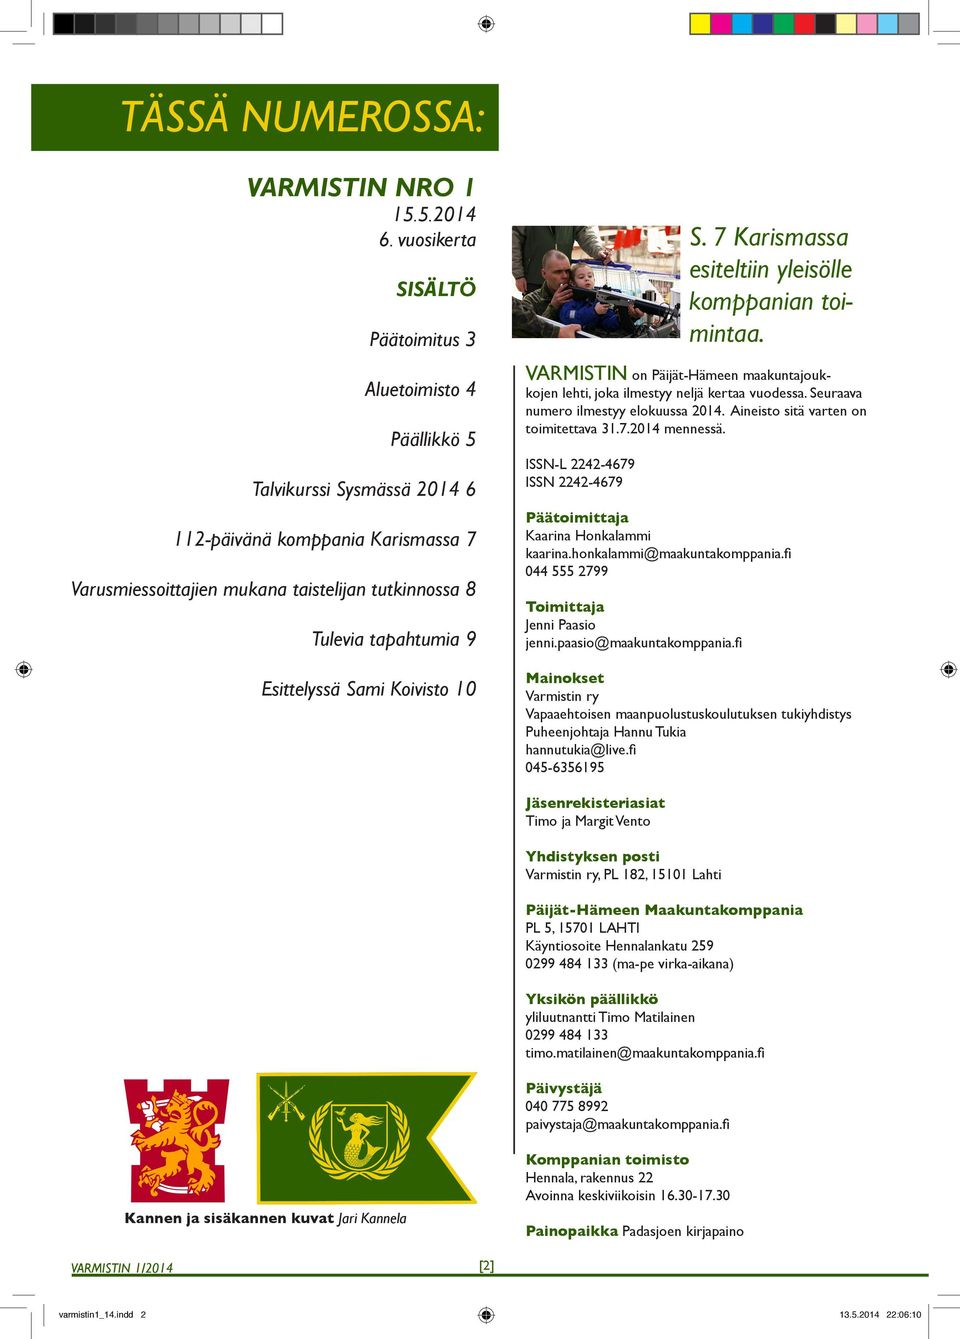 Esittelyssä Sami Koivisto 10 VARMISTIN on Päijät-Hämeen maakuntajoukkojen lehti, joka ilmestyy neljä kertaa vuodessa. Seuraava numero ilmestyy elokuussa 2014. Aineisto sitä varten on toimitettava 31.